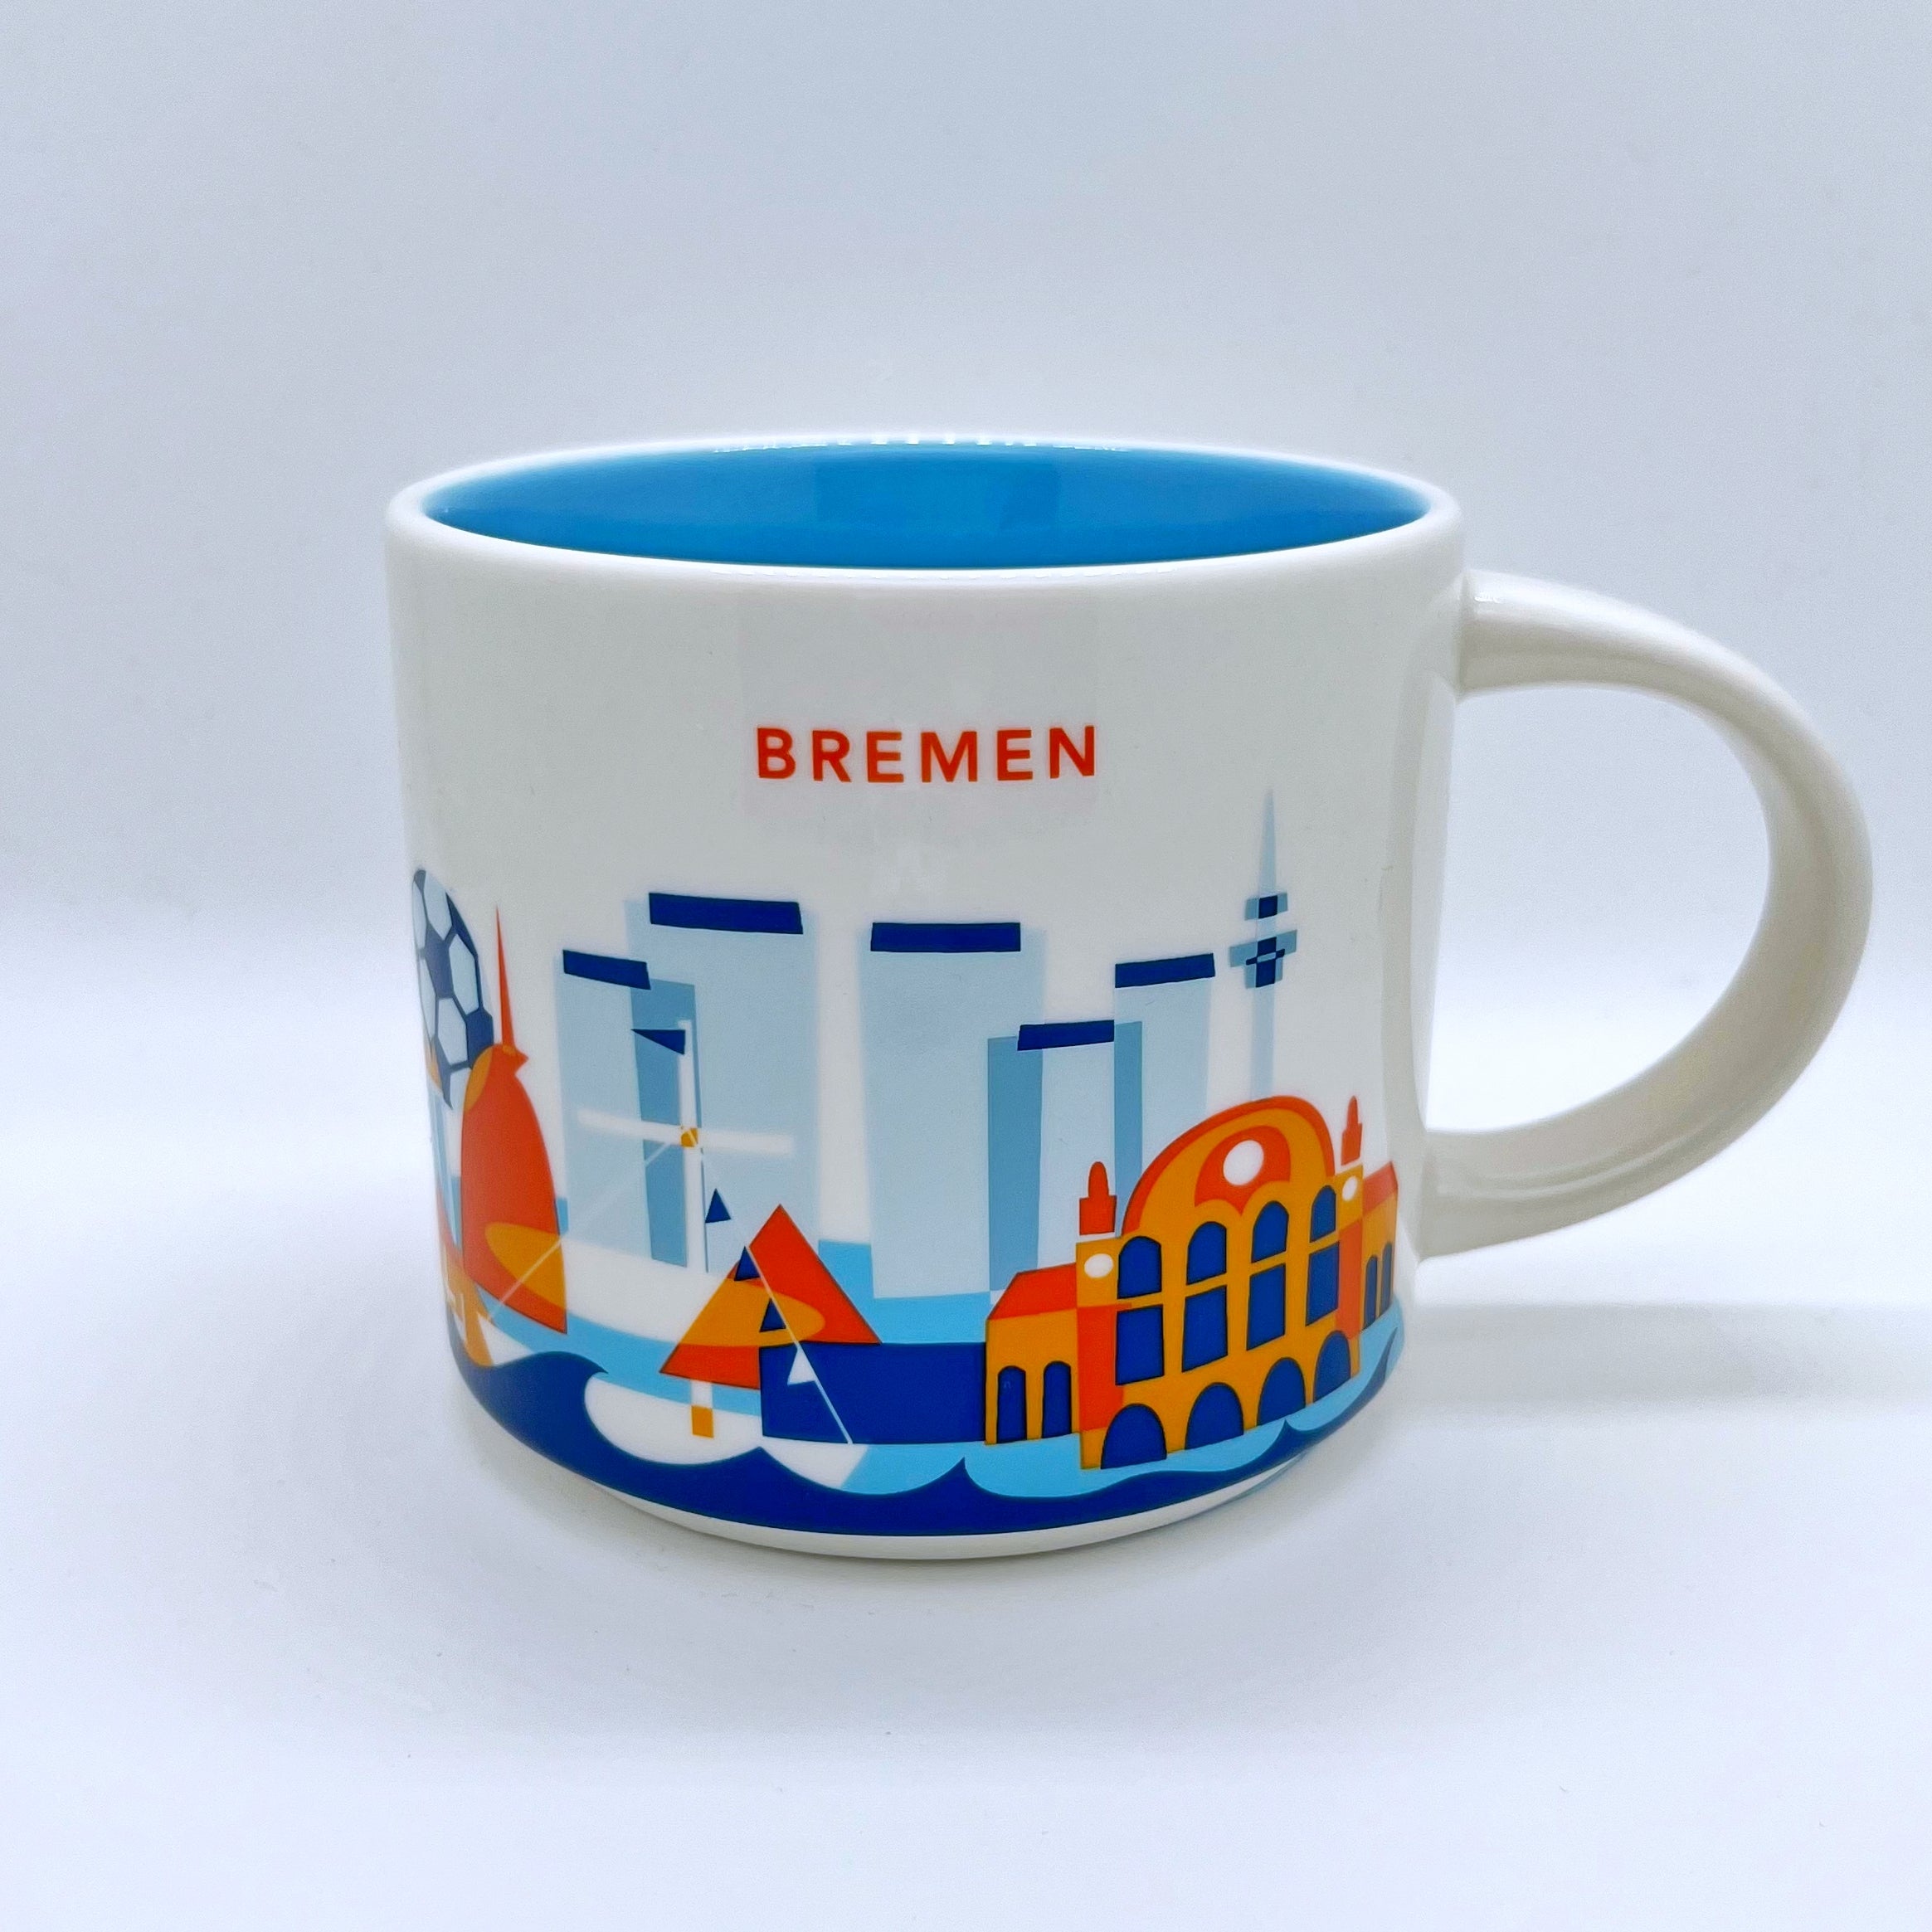 Kaffee Tee und Cappuccino Tasse von Starbucks mit gemalten Bildern aus der Stadt Bremen